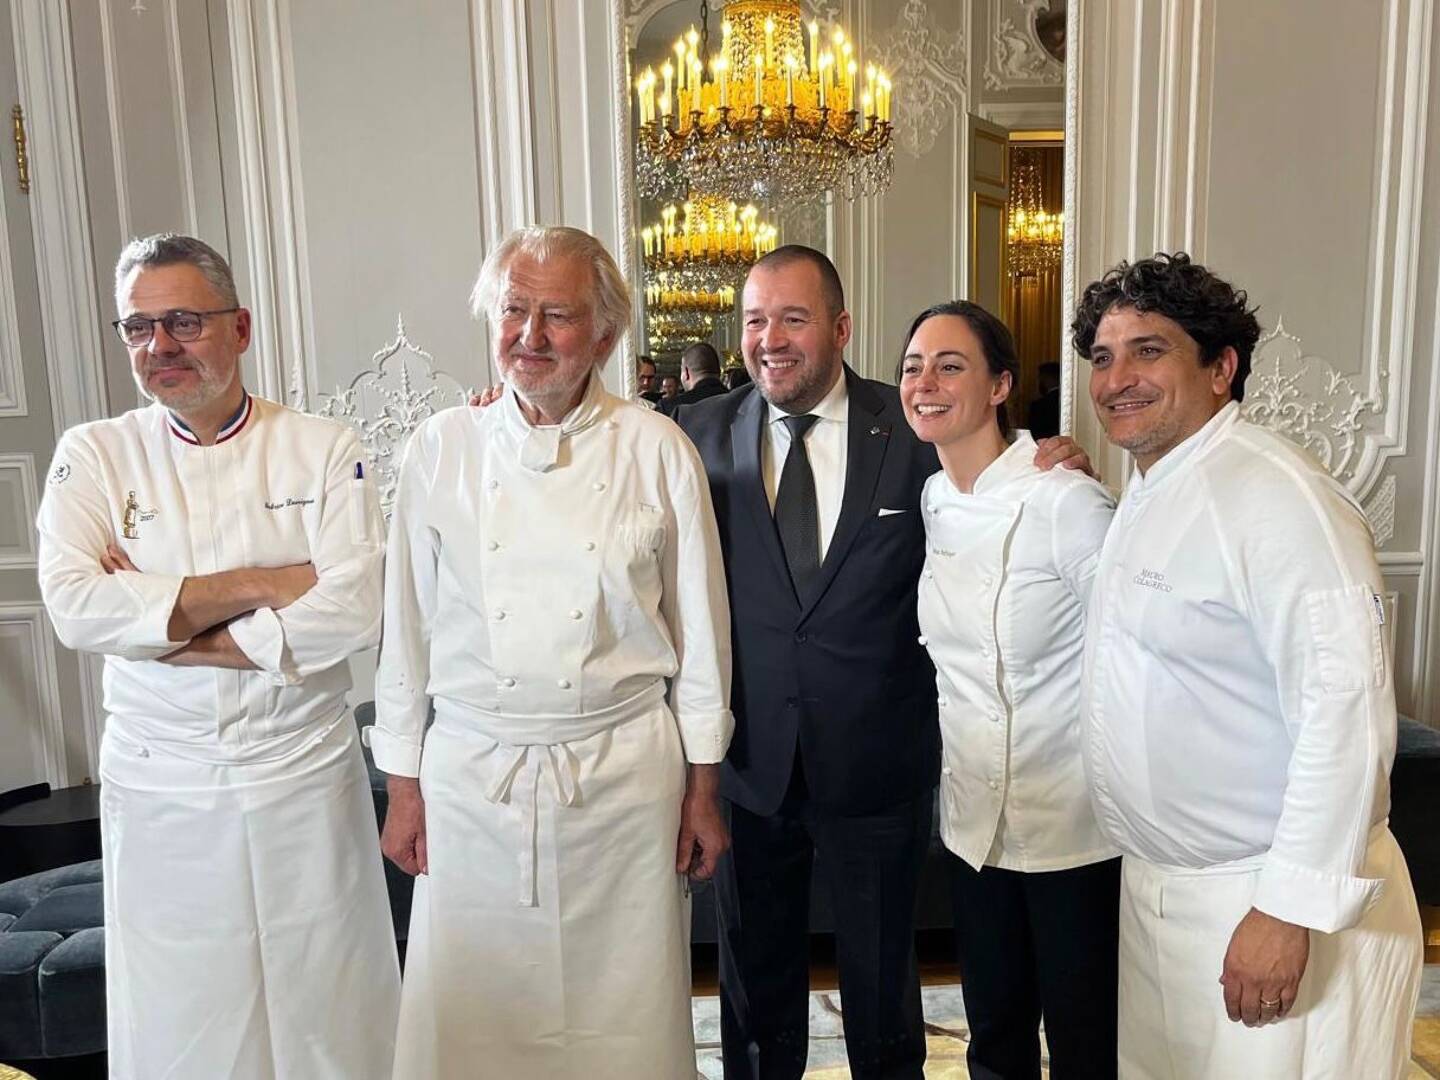 Fabrice Desvignes, Pierre Gagnaire, Guillaume Gomez, Nina Métayer et Mauro Colagreco ont concocté le dîner d'Etat pour la venue du président chinois en France.